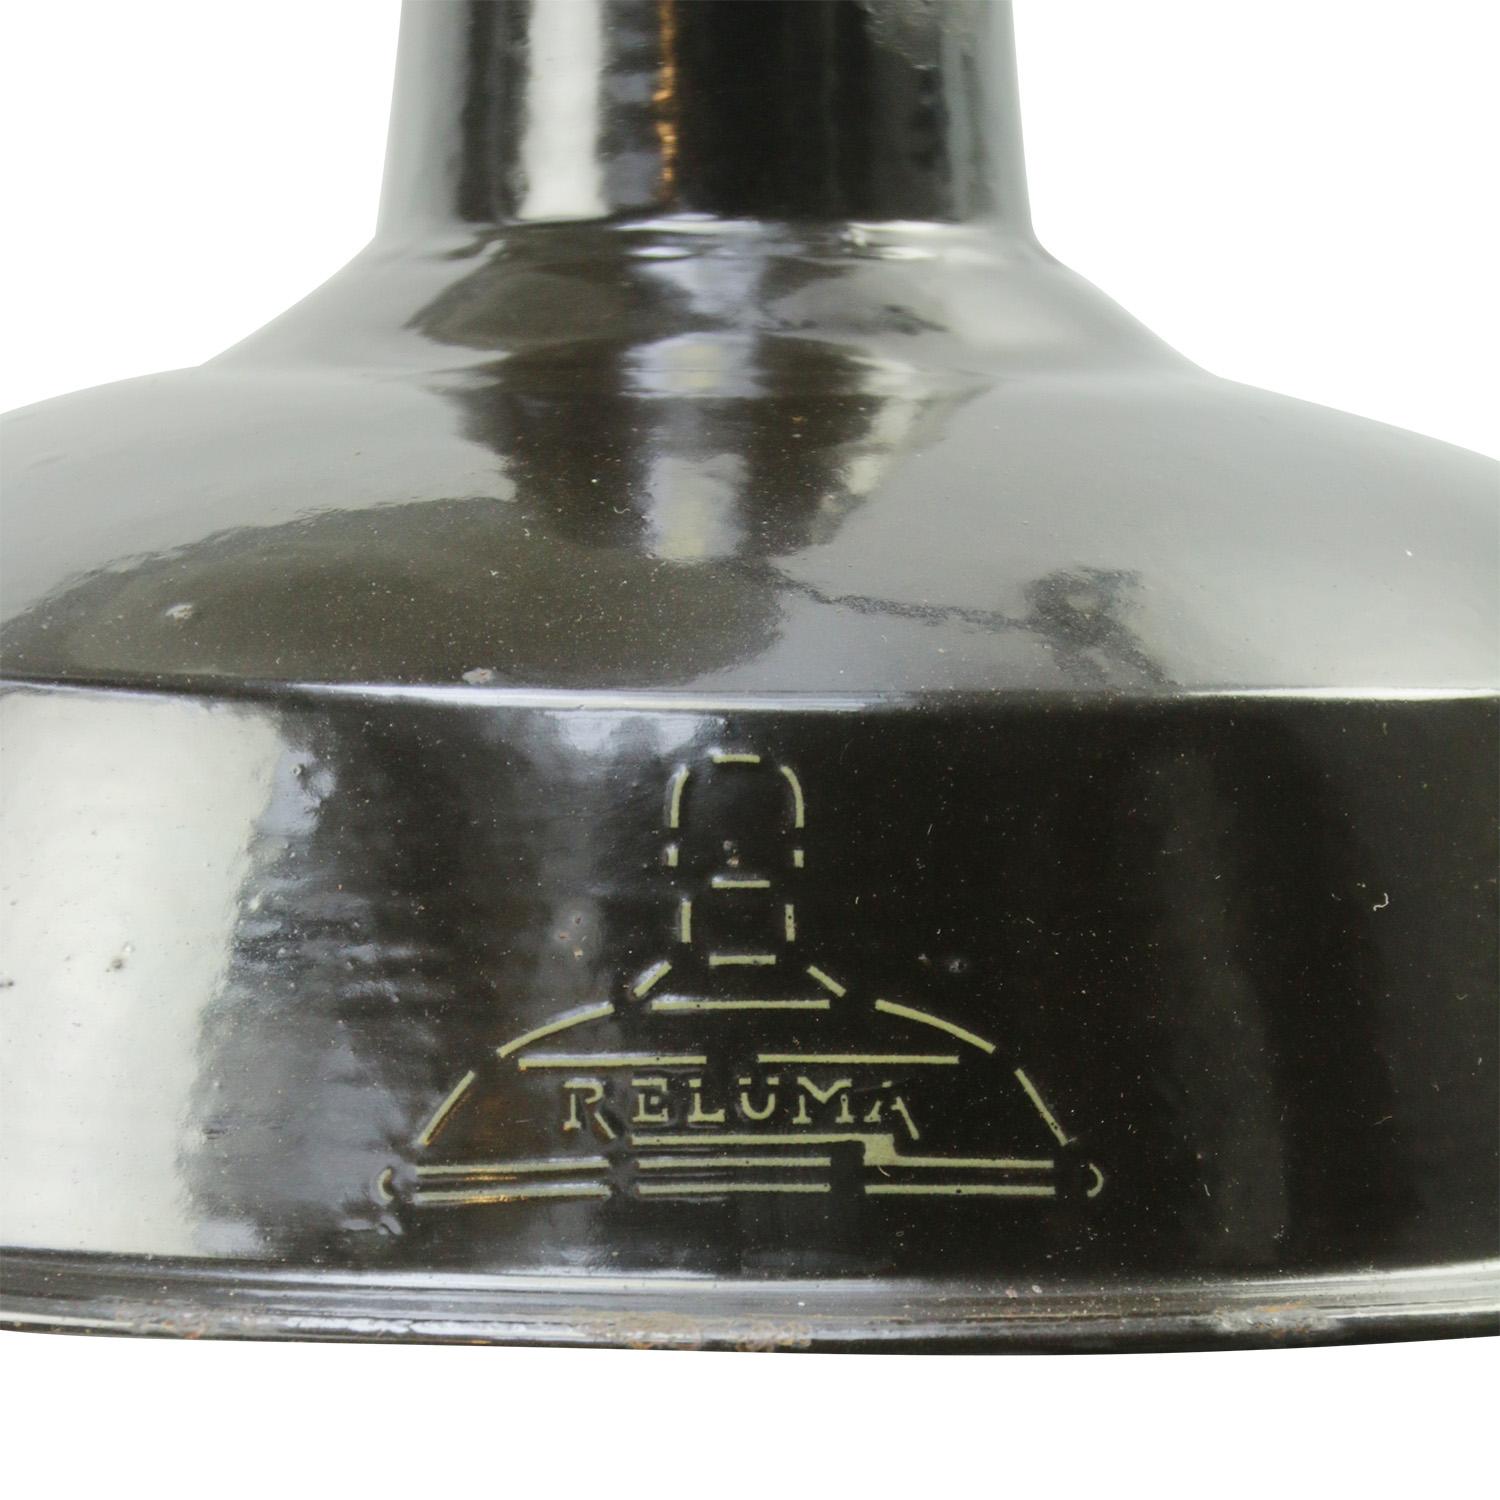 Lampe pendante Factory belge de Reluma
Teinte émail brun.
Blanc à l'intérieur

Poids : 1,10 kg / 2,4 lb

Le prix est fixé par article individuel. Toutes les lampes ont été rendues conformes aux normes internationales pour les ampoules à